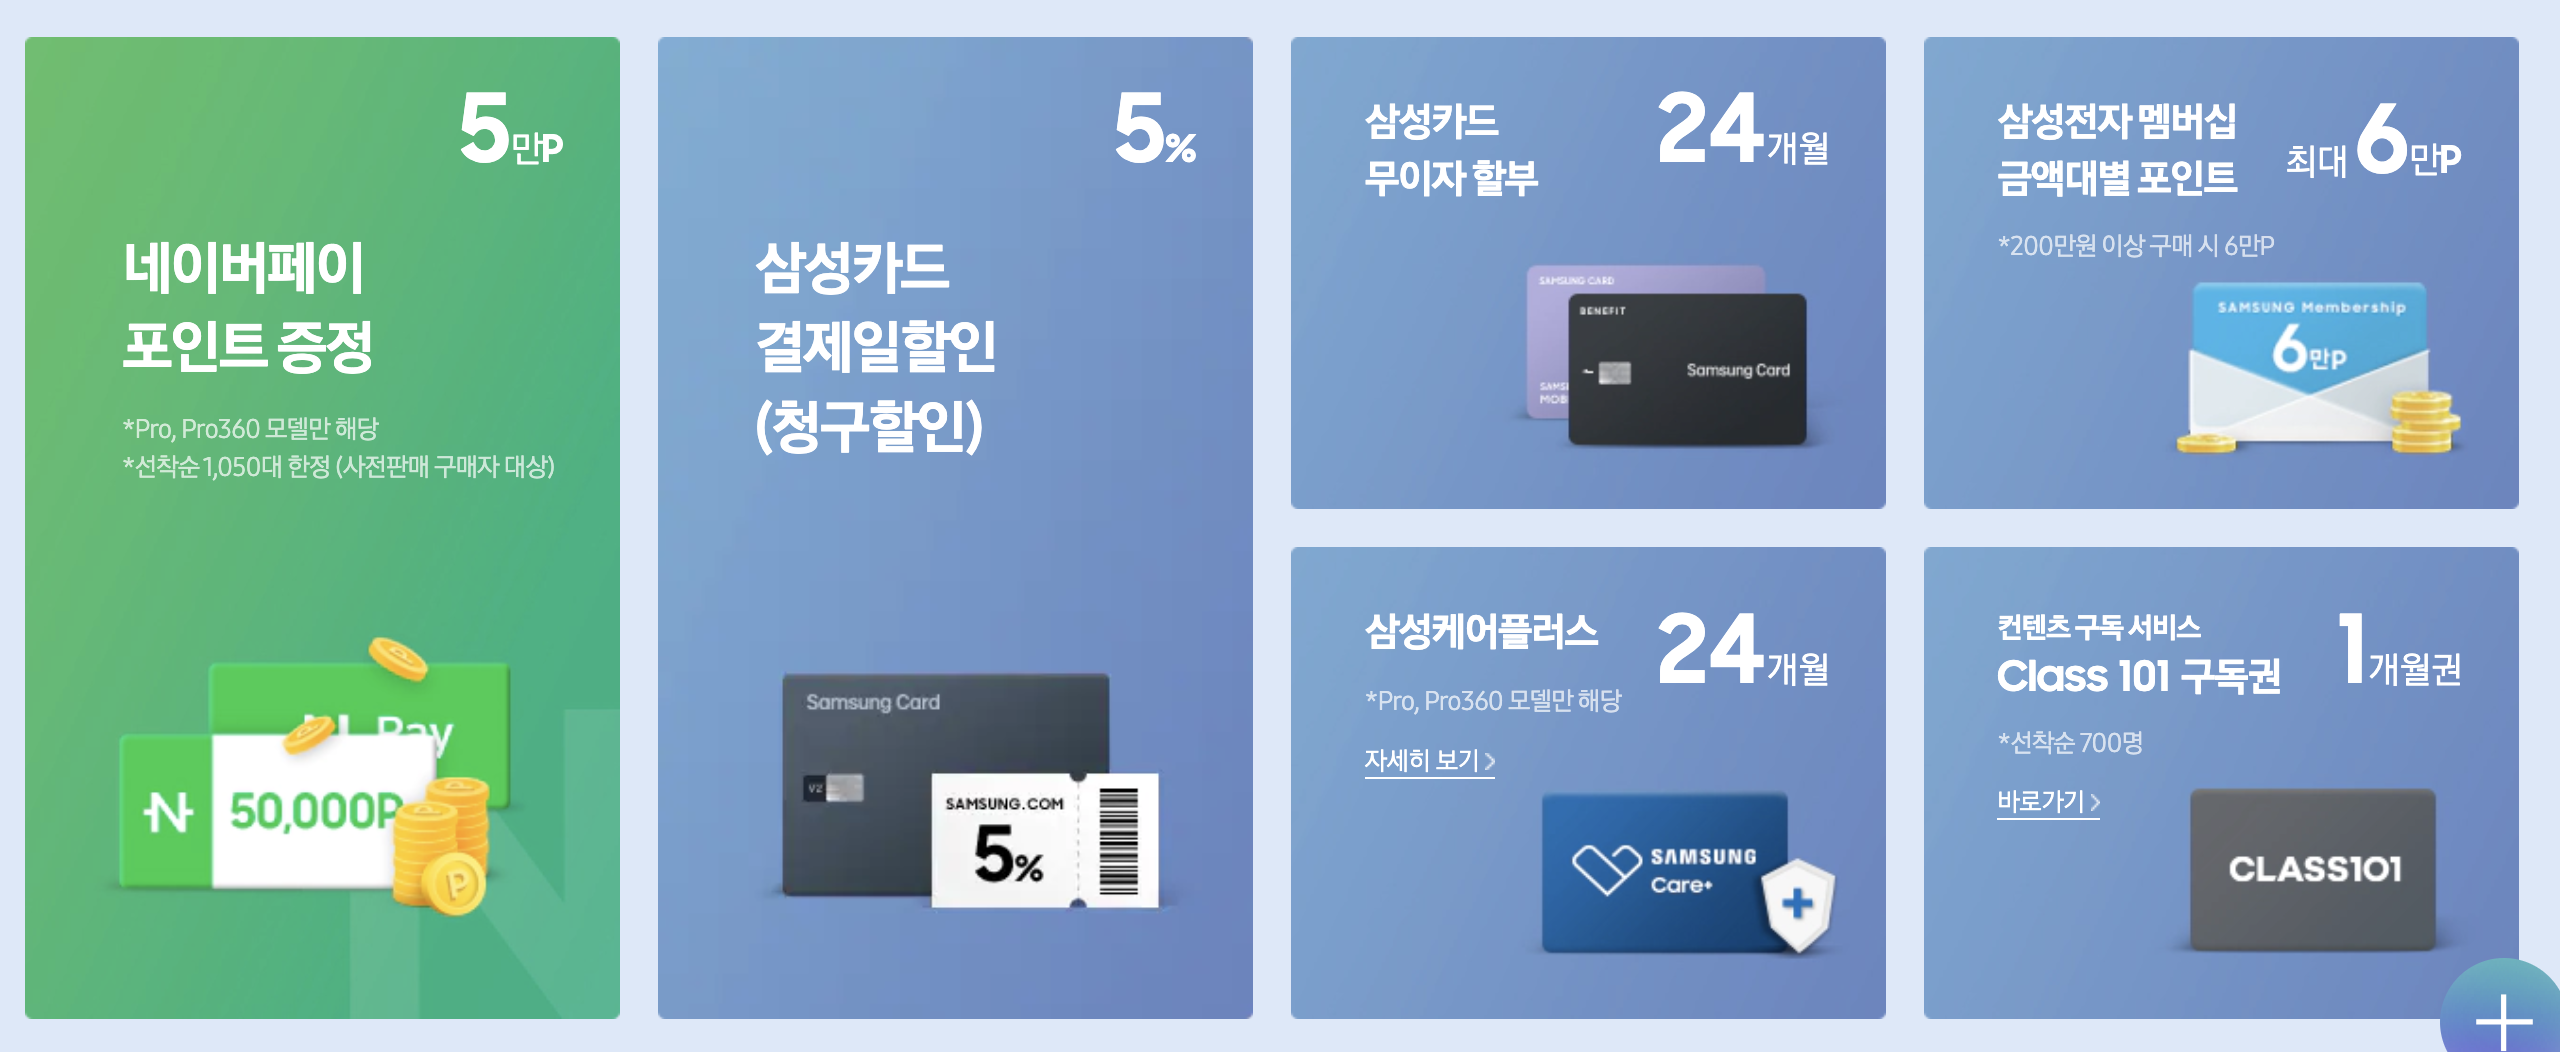 삼성닷컴-갤럭시북3-사전예약-혜택